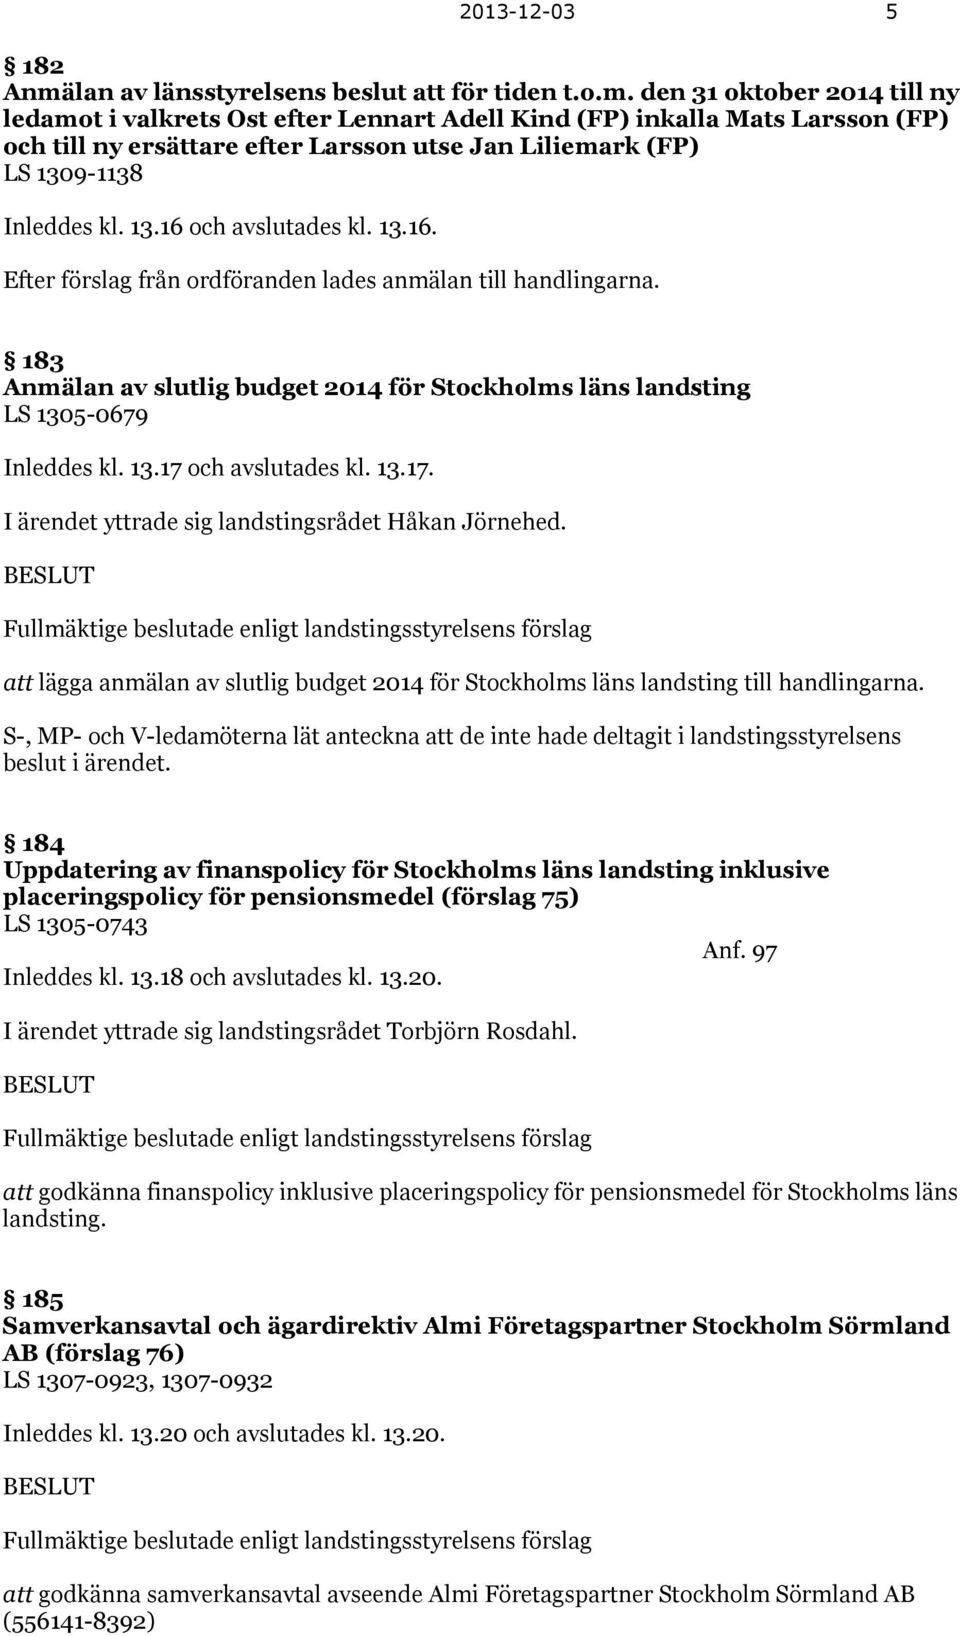 den 31 oktober 2014 till ny ledamot i valkrets Ost efter Lennart Adell Kind (FP) inkalla Mats Larsson (FP) och till ny ersättare efter Larsson utse Jan Liliemark (FP) LS 1309-1138 Inleddes kl. 13.16 och avslutades kl.